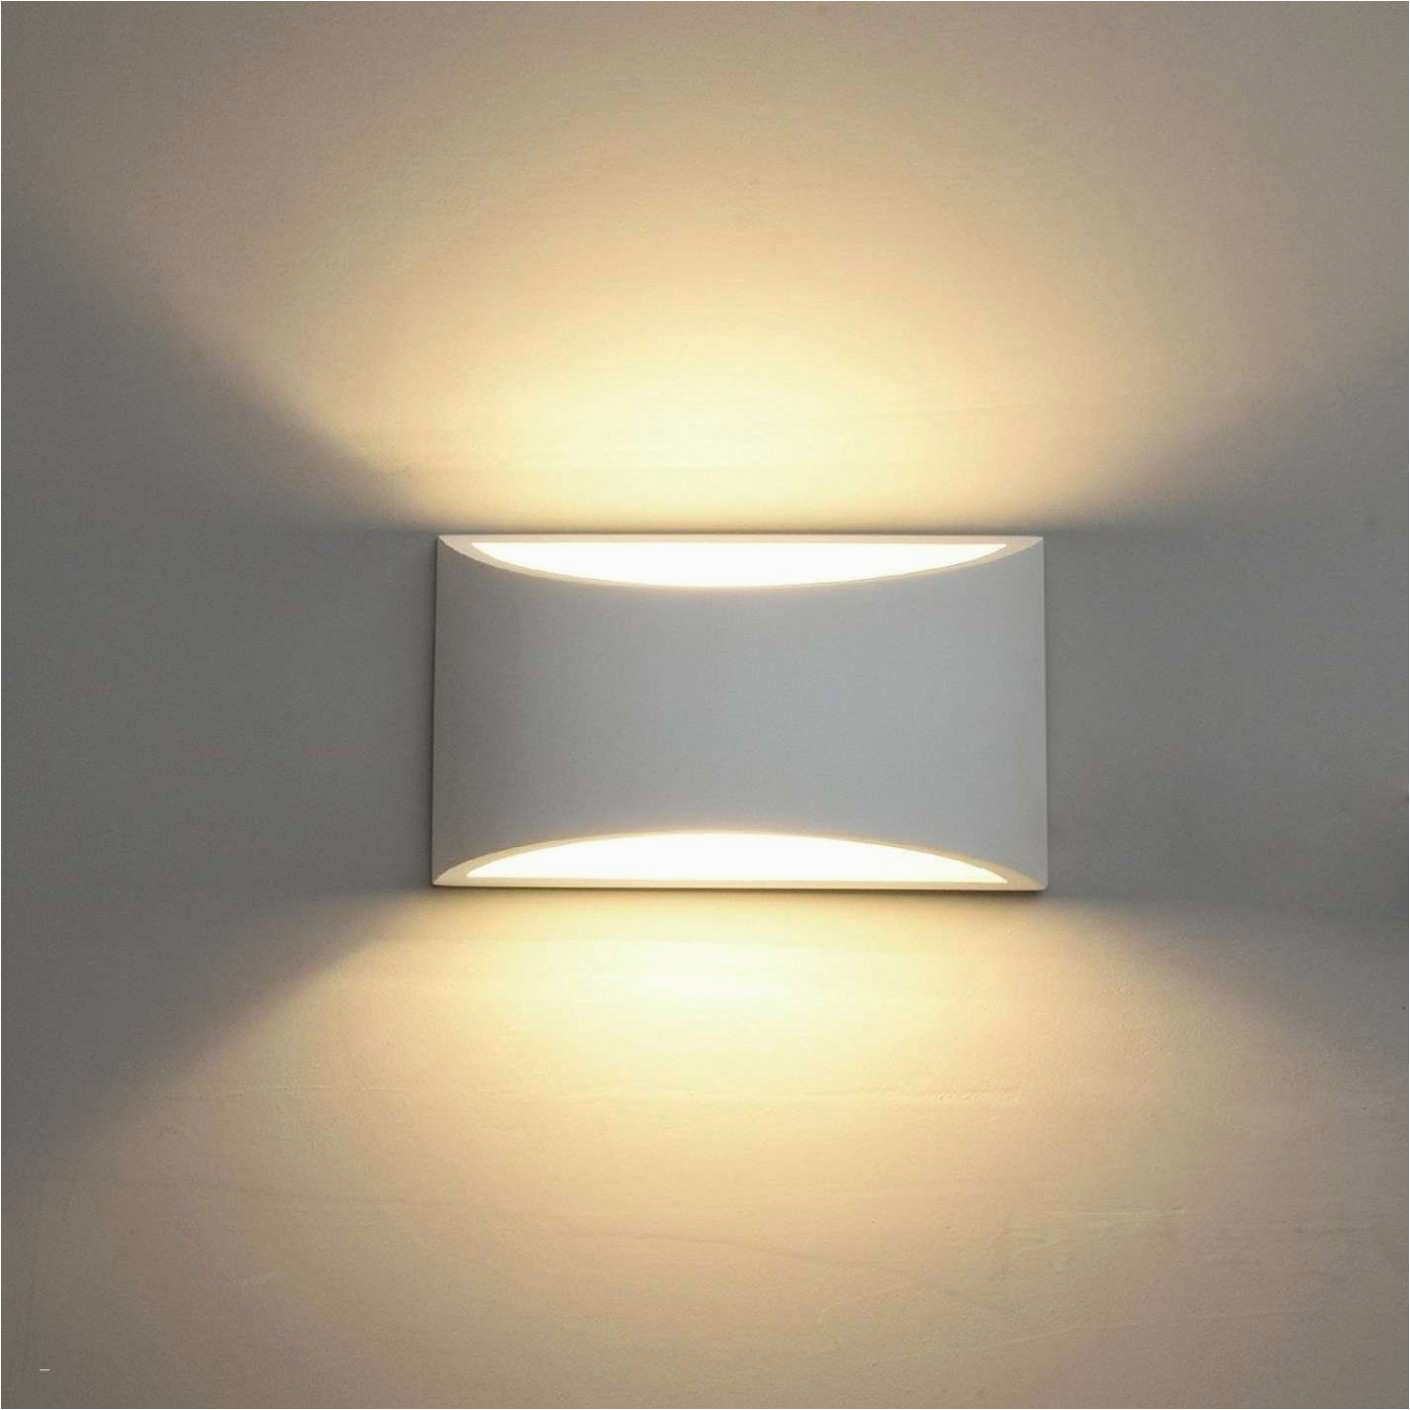 led deckenlampe wohnzimmer elegant deckenlampe schlafzimmer 0d archives design von led lampen of led deckenlampe wohnzimmer